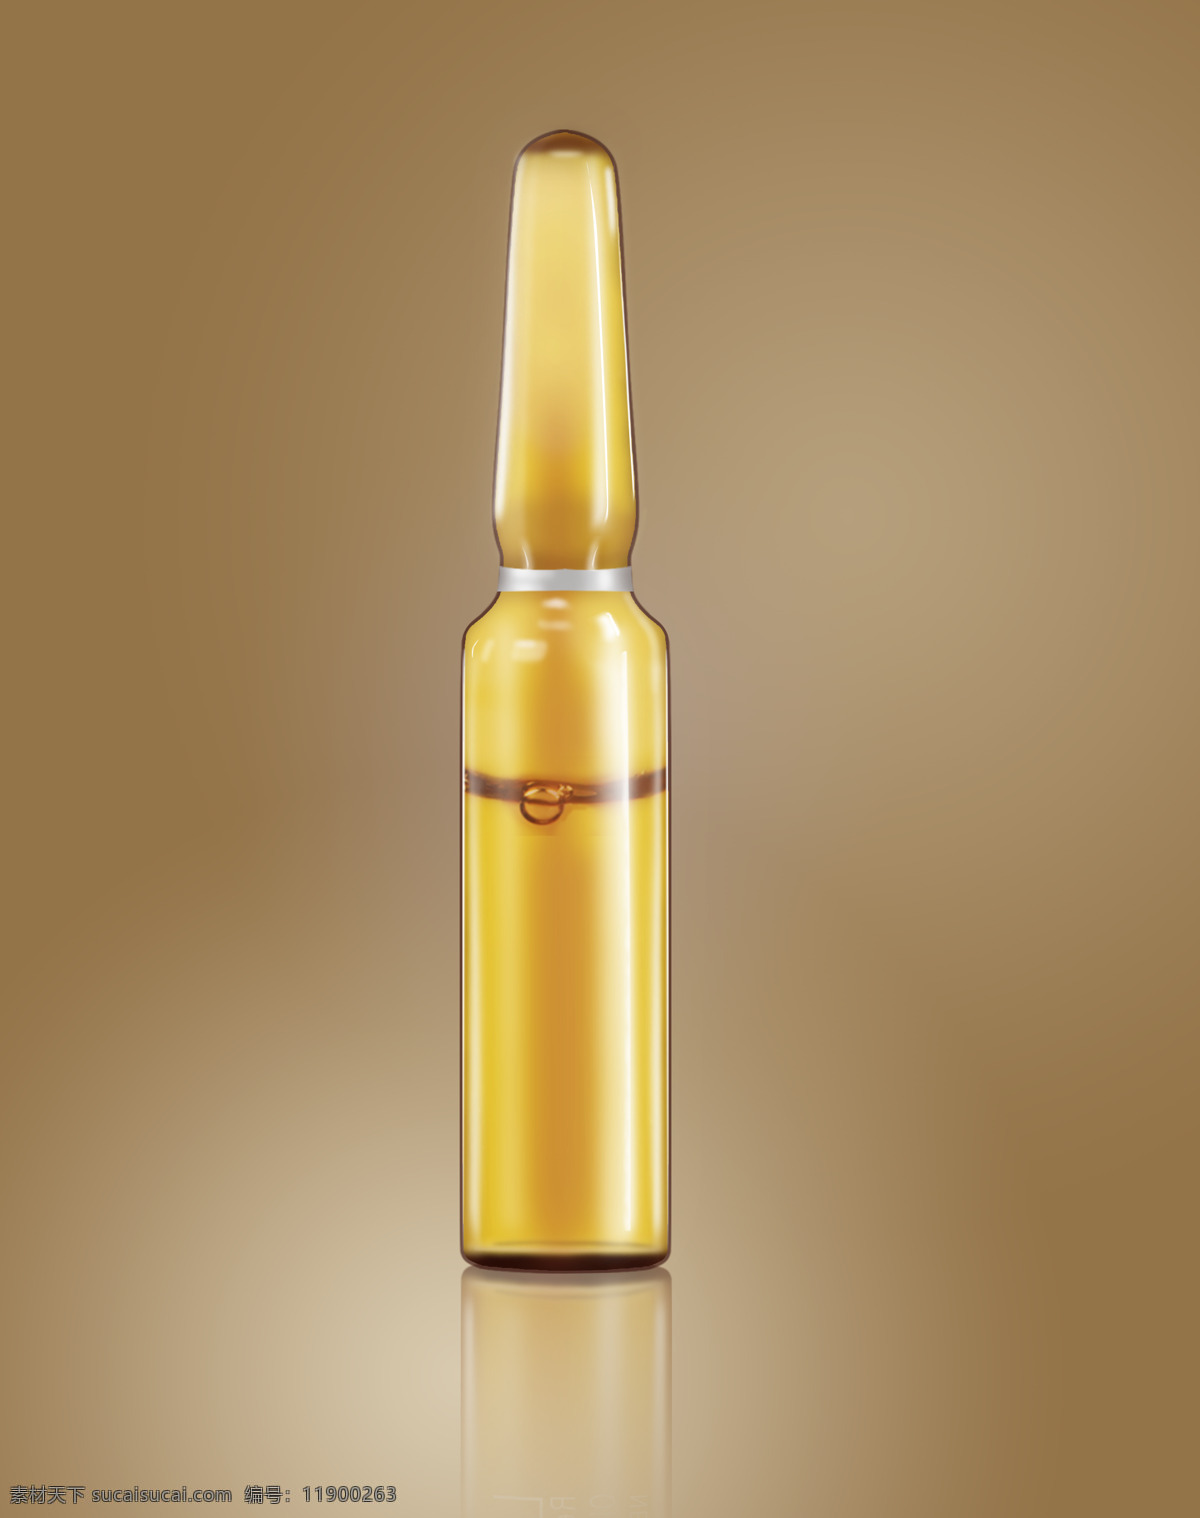 黄色 安 瓶 效果图 安瓶 精华 玻璃瓶 精华安瓶 3d设计 3d作品